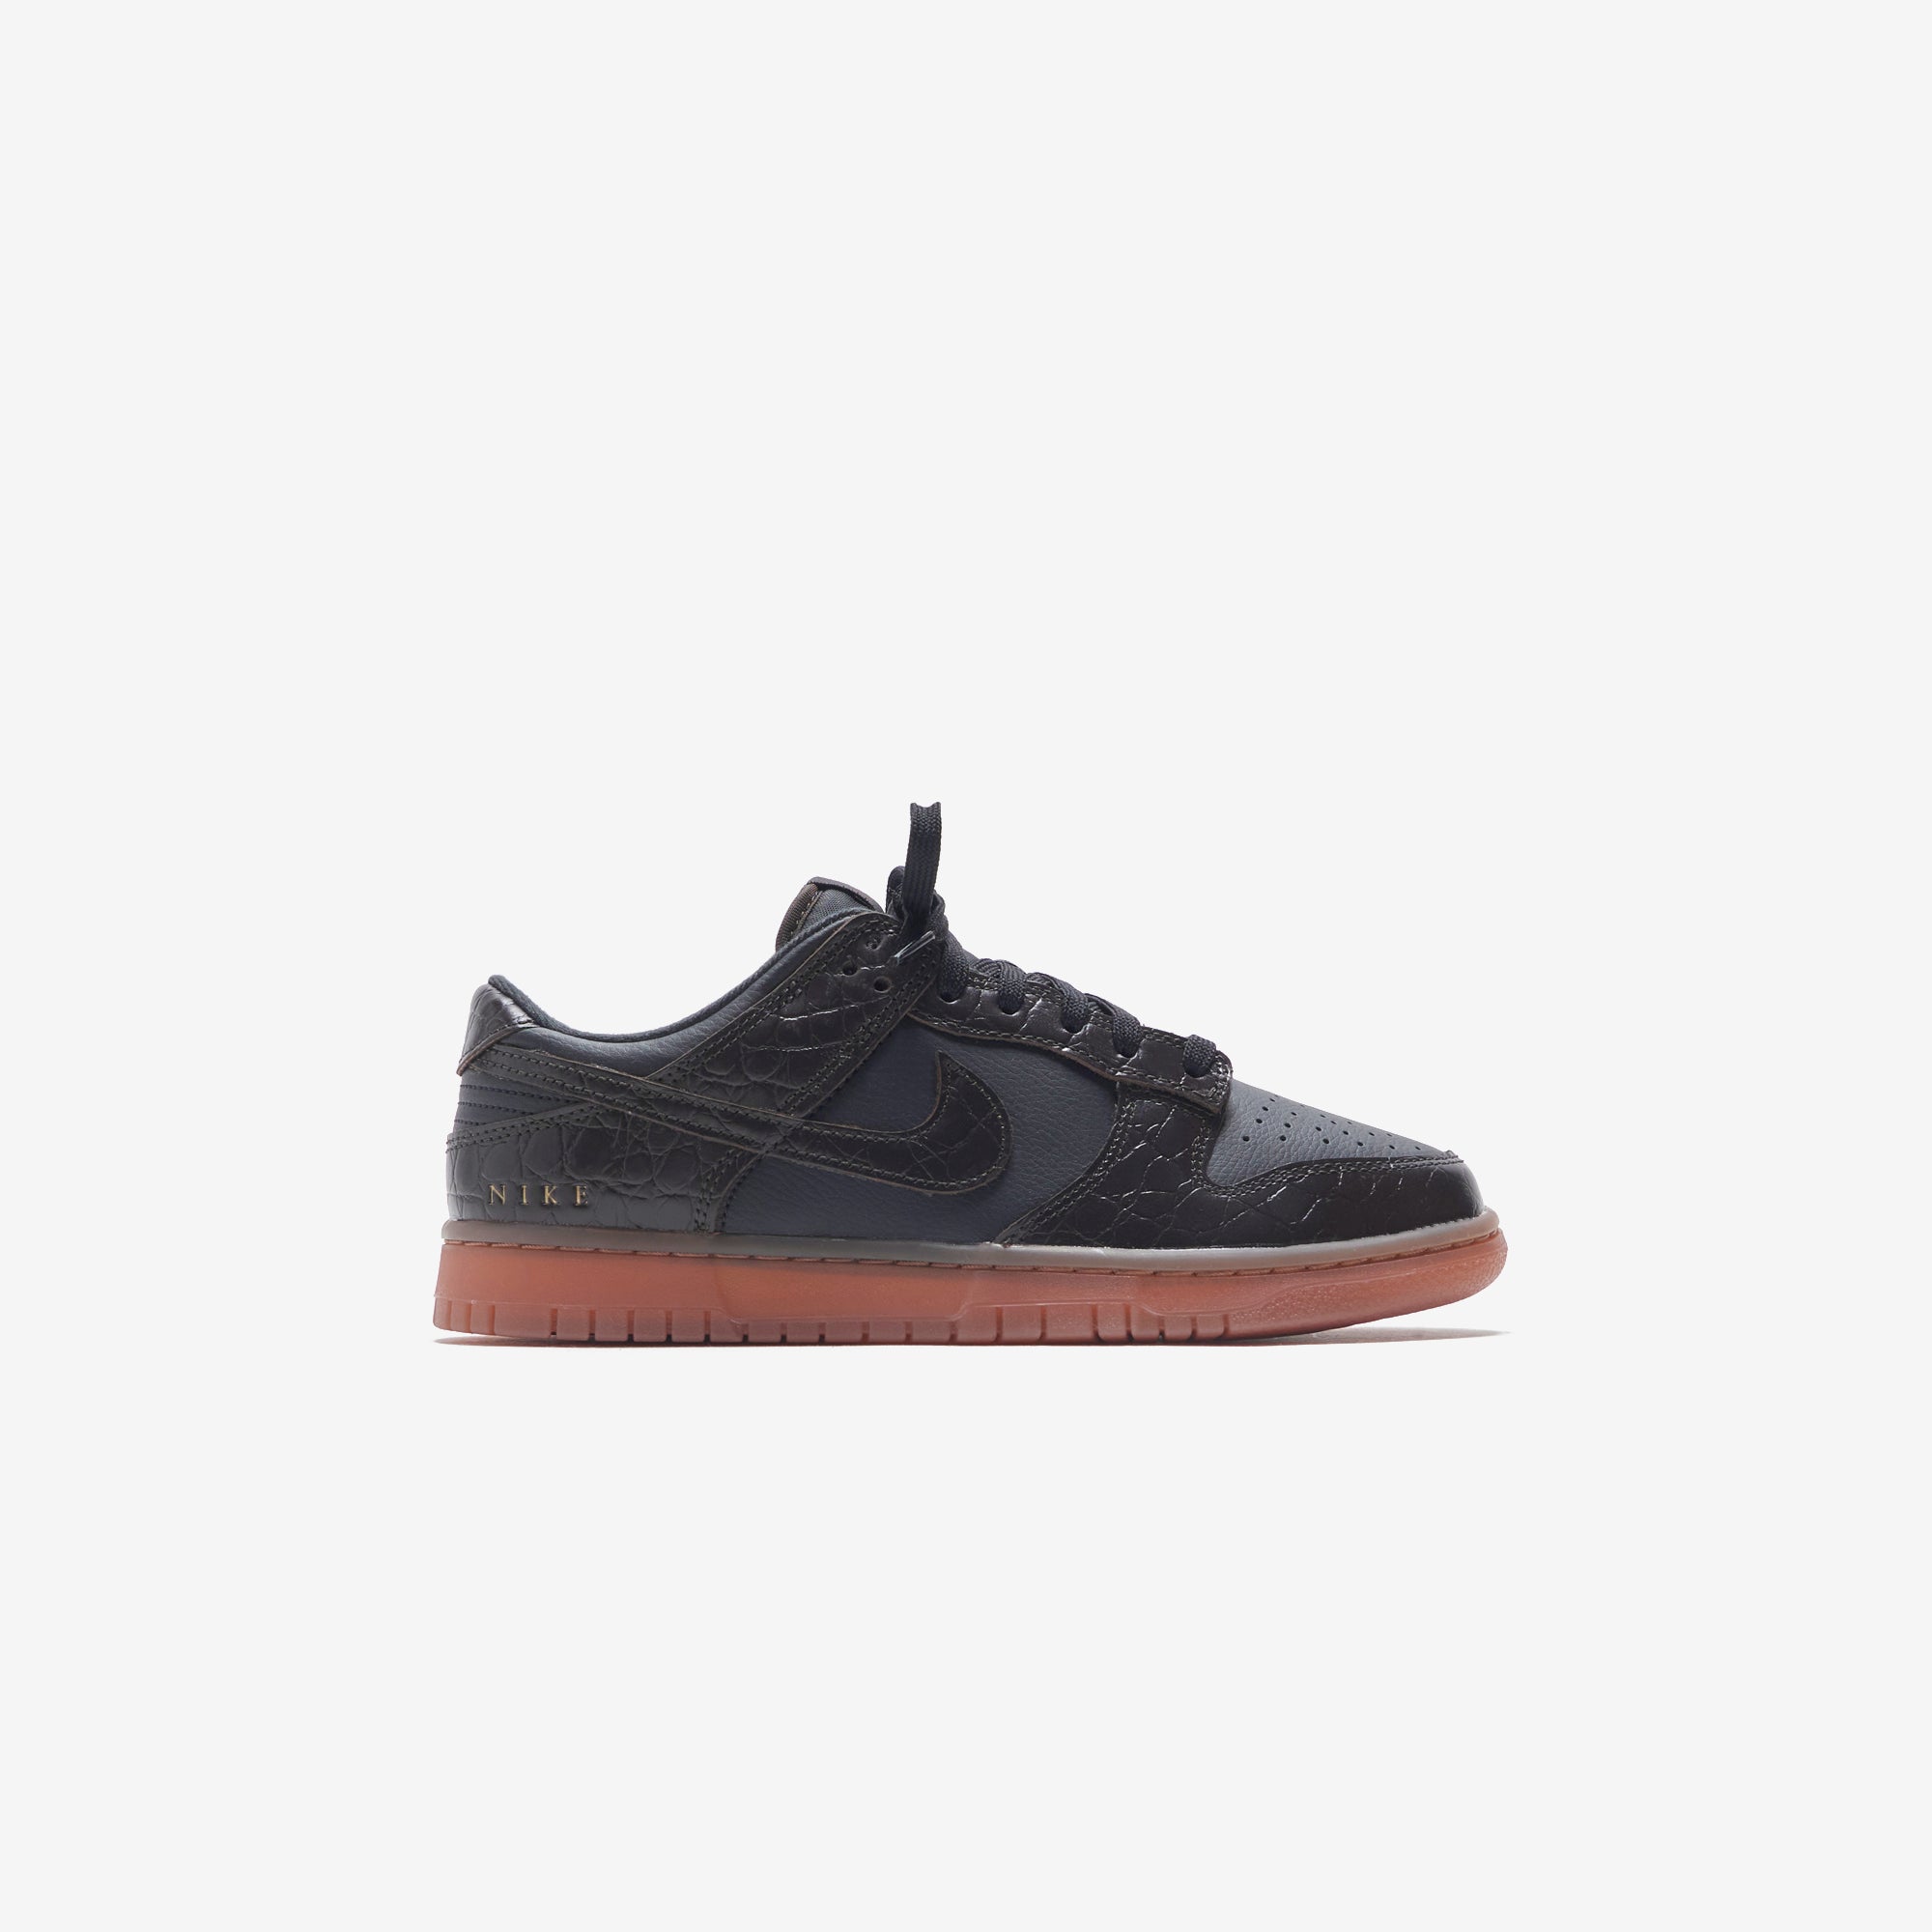 Nike Dunk Low SE - Black / Brown Basalt